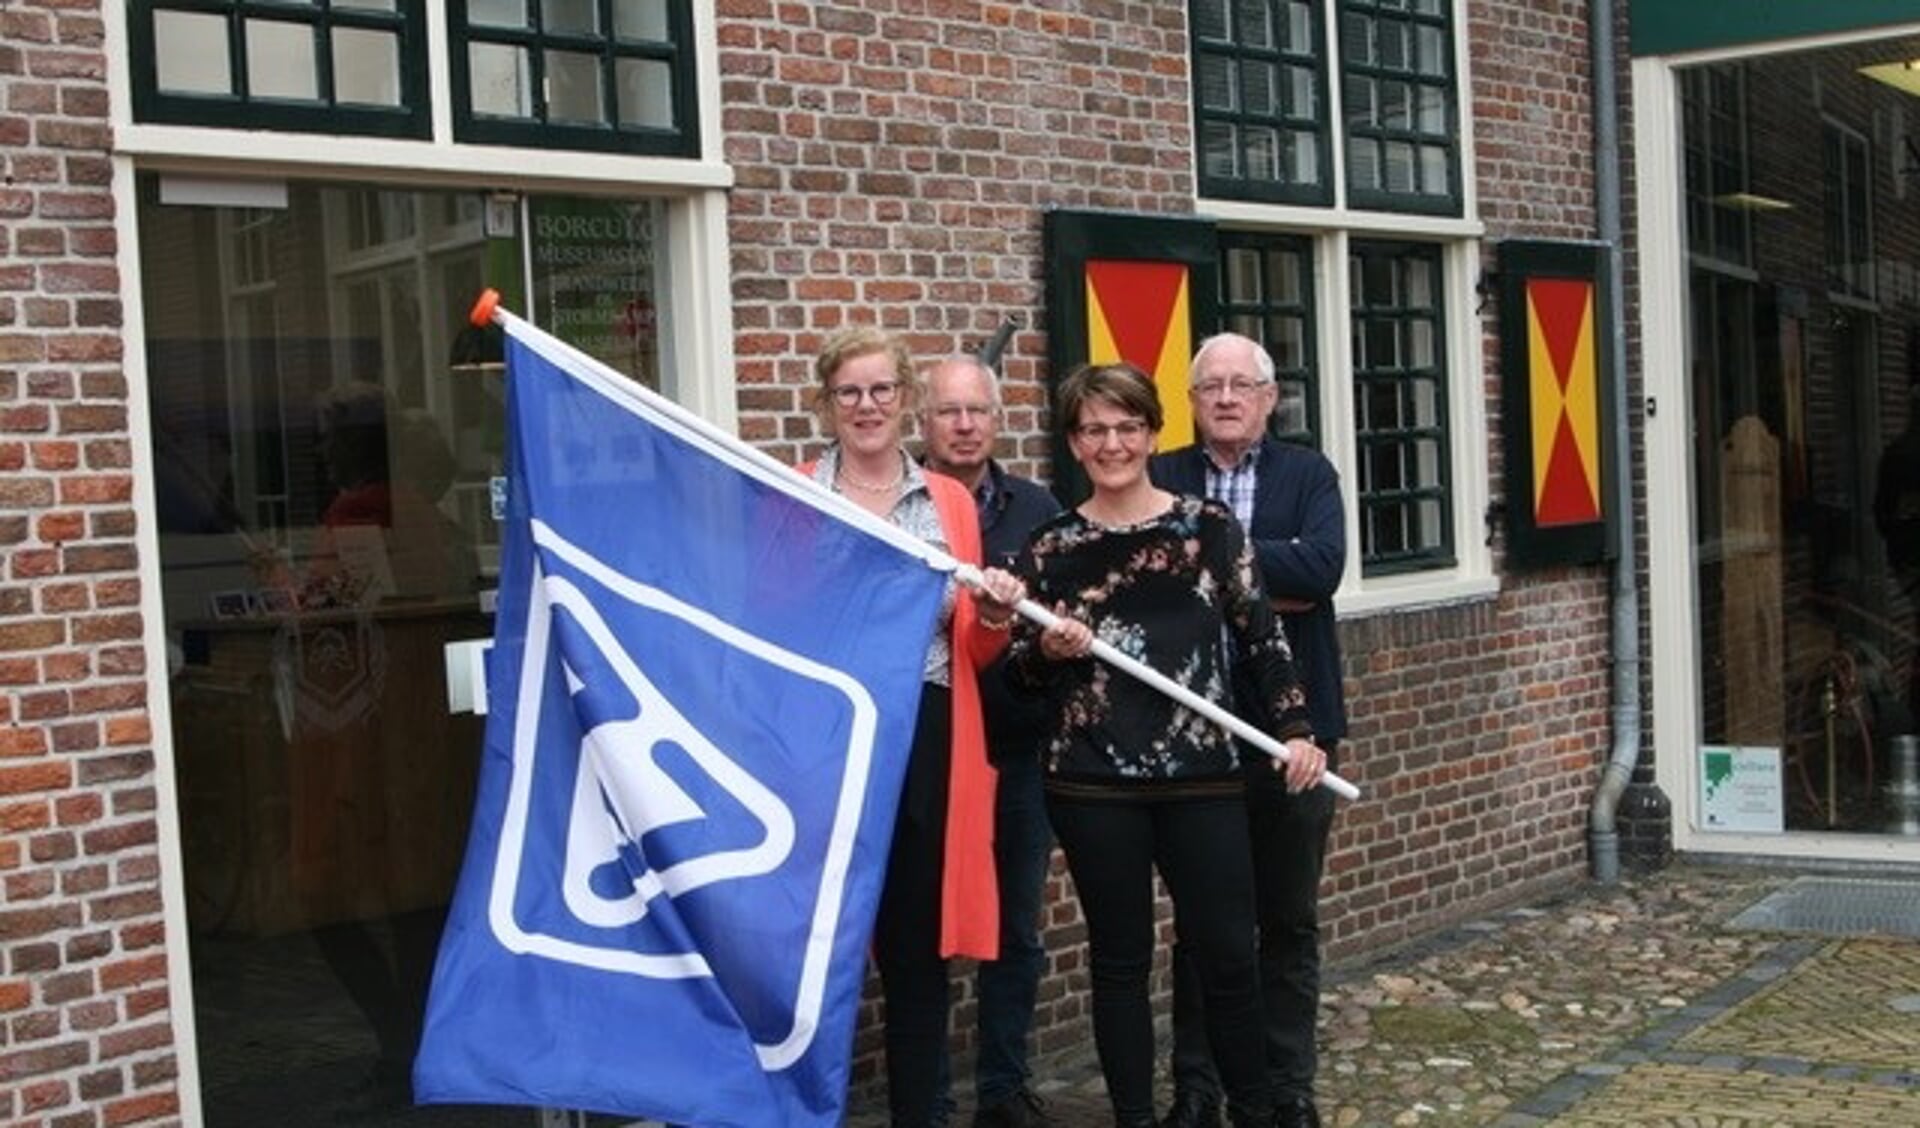 Nu de VVV-vlag weer wappert aan de Hofstraat in Borculo kan iedereen daar ook weer de bekende VVV-bonnen kopen. Foto: Wytske Folkertsma